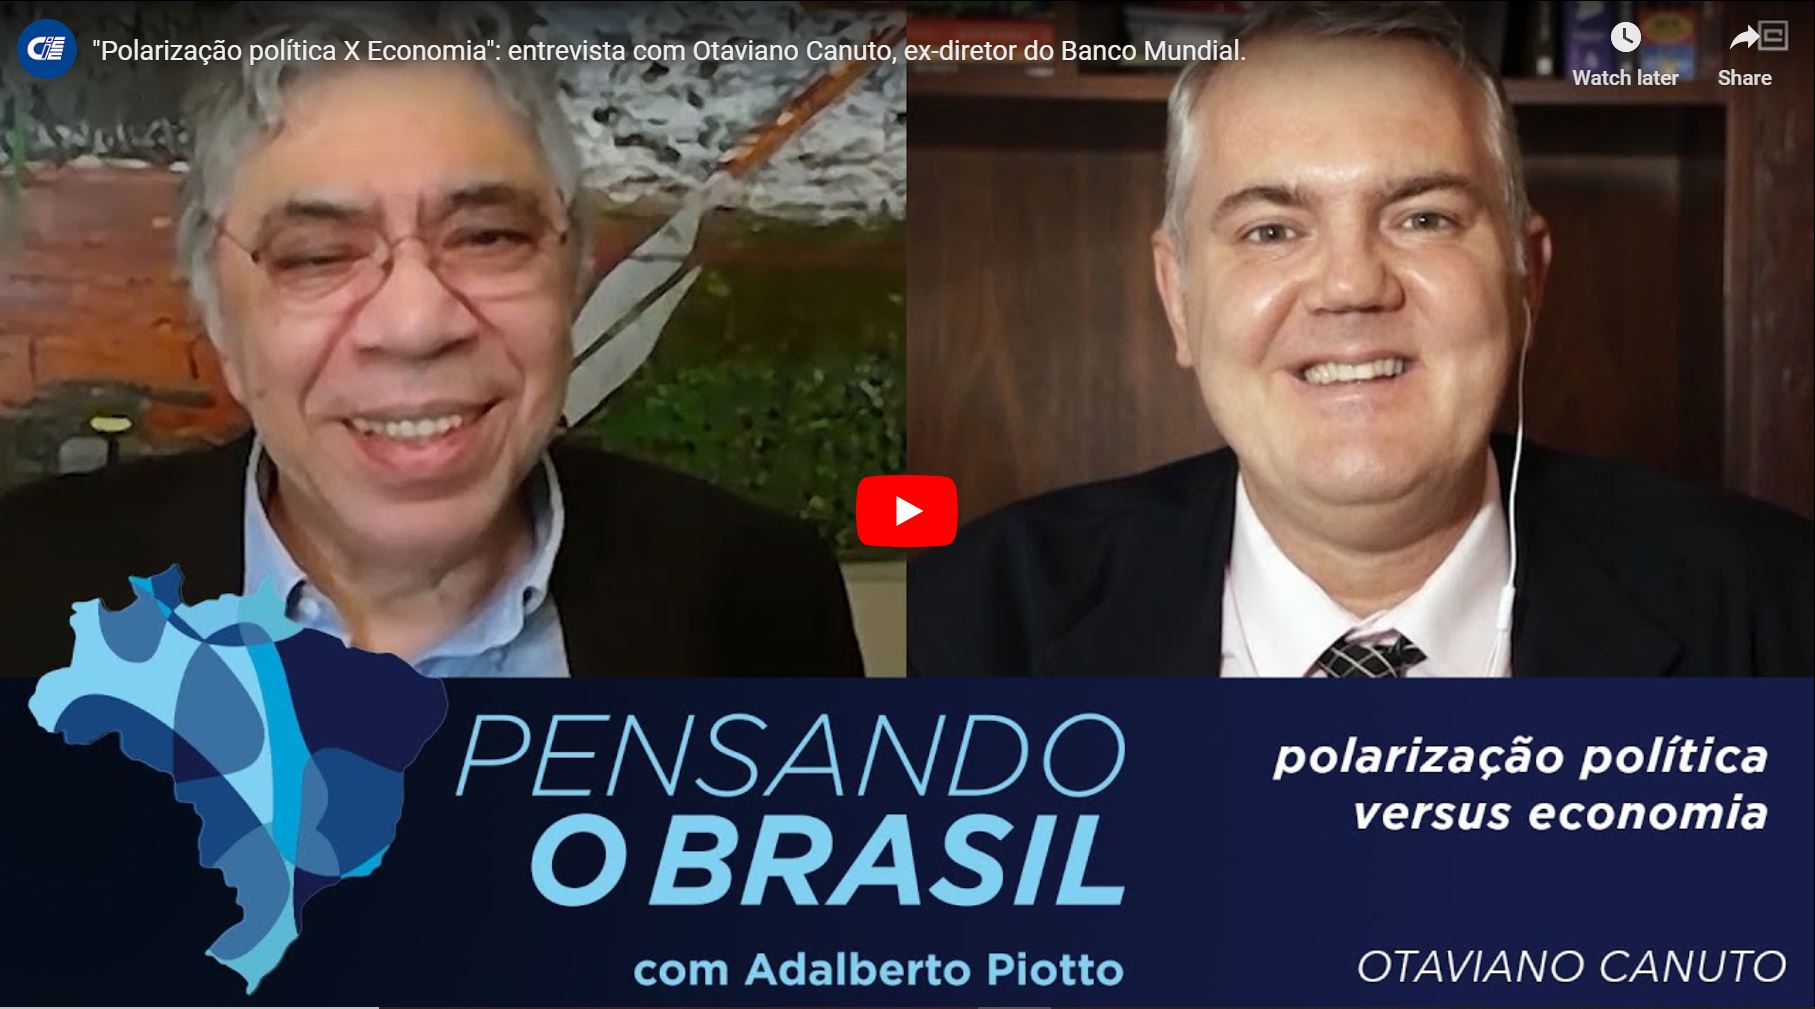 Read more about the article “Polarização política X Economia”: entrevista com Otaviano Canuto, ex-diretor do Banco Mundial